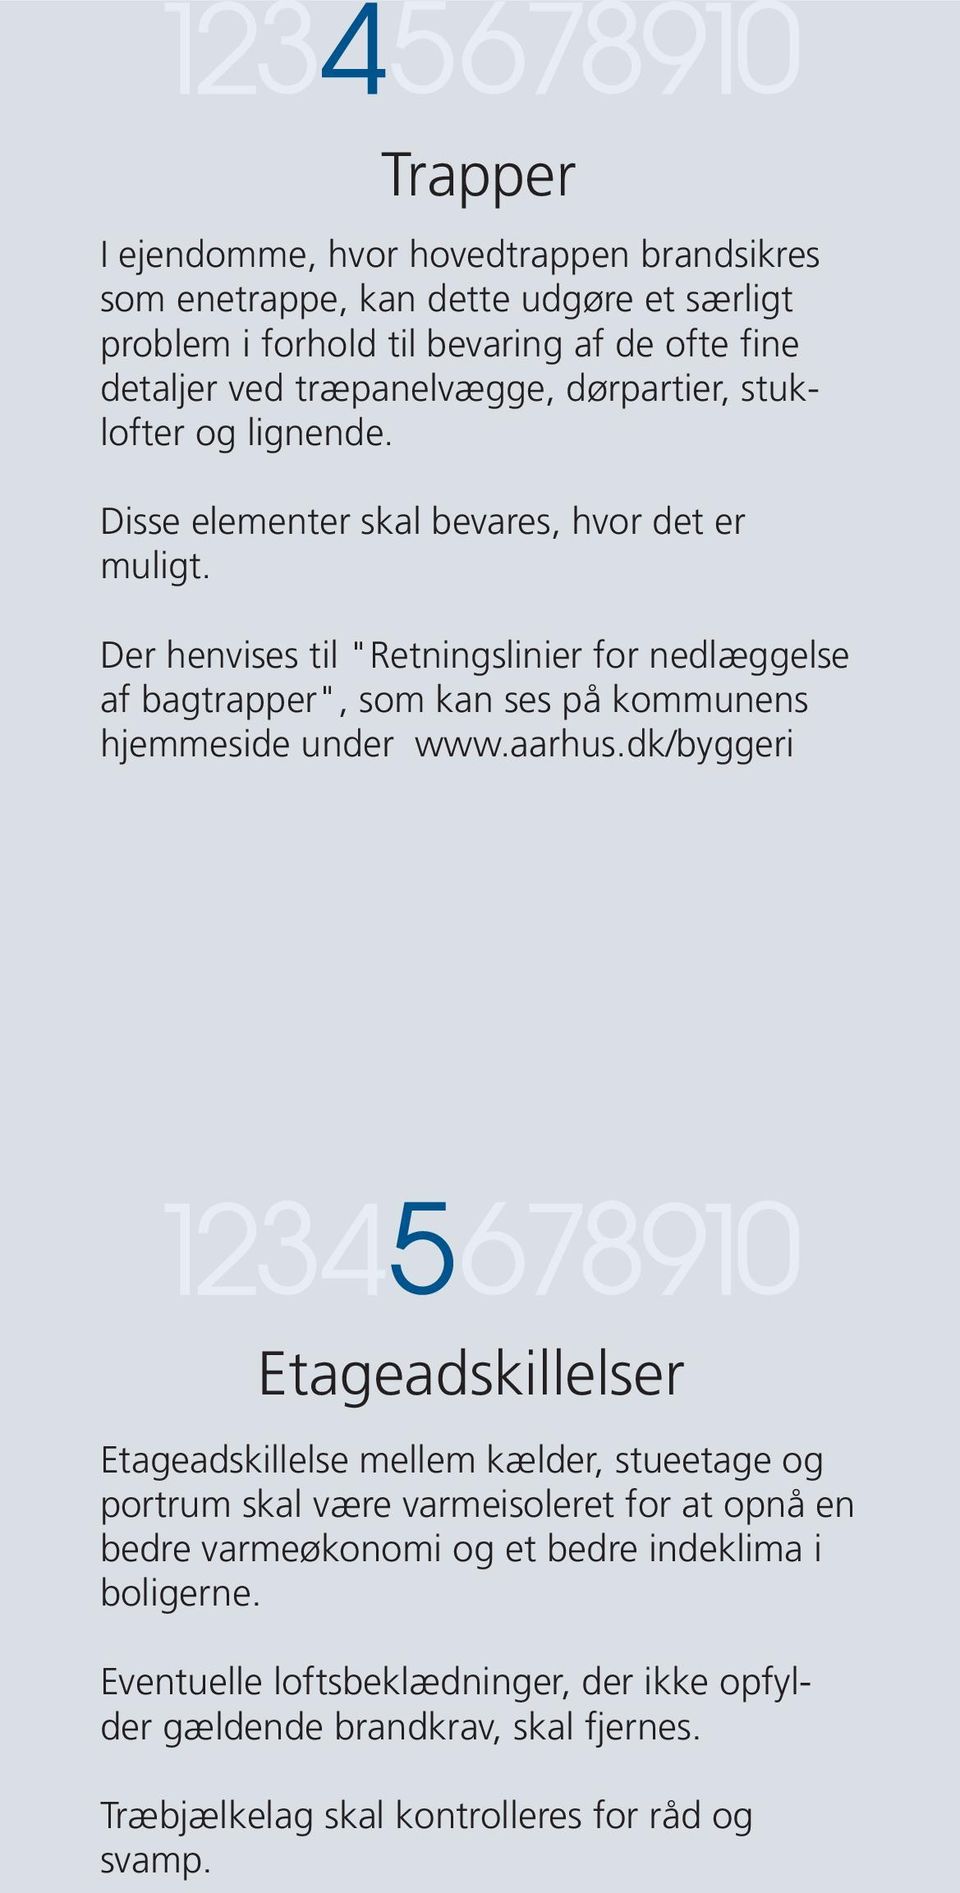 Der henvises til "Retningslinier for nedlæggelse af bagtrapper", som kan ses på kommunens hjemmeside under www.aarhus.